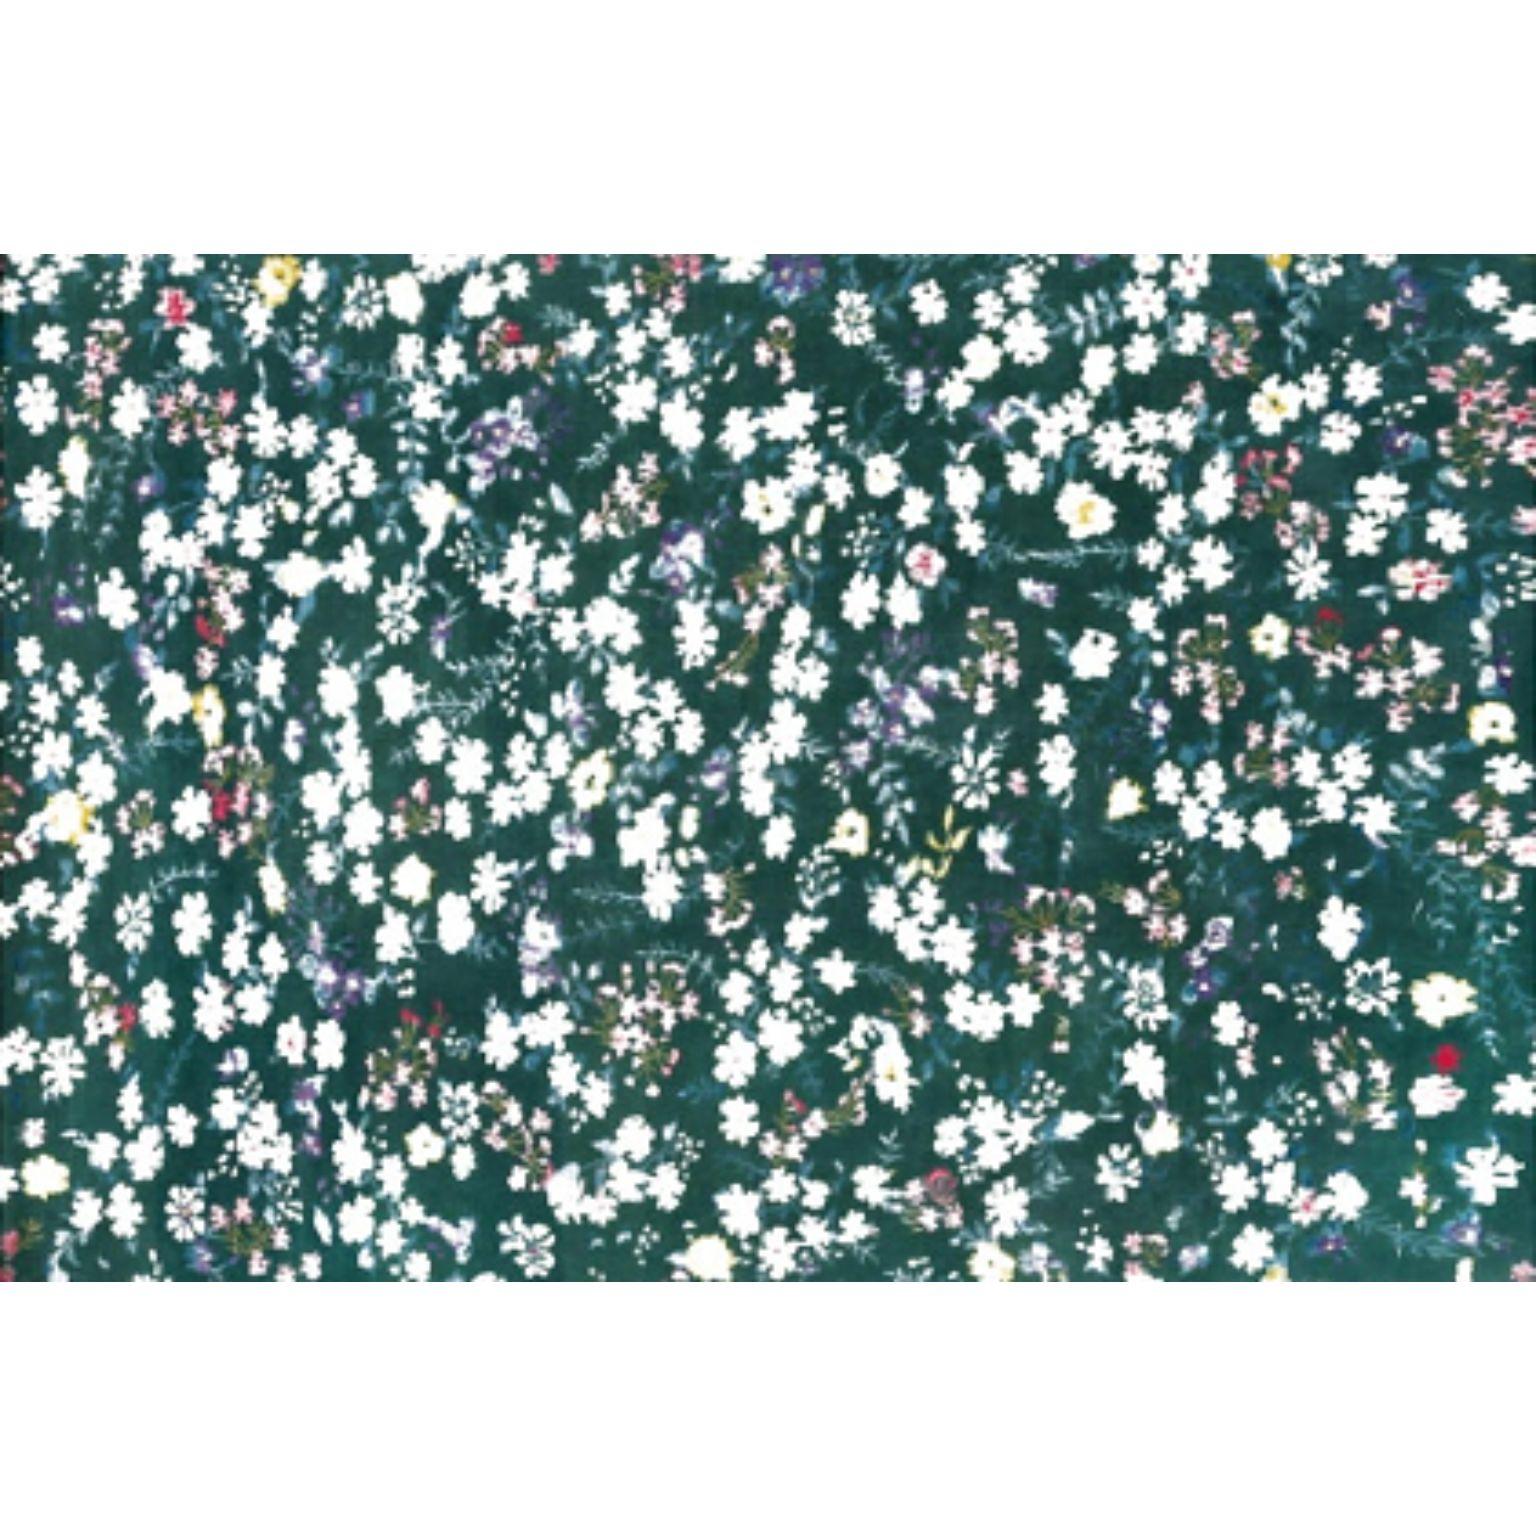 Teppich 'CHLOE' 400 von Illulian
Abmessungen: T400 x H300 cm 
MATERIALIEN: Wolle 50%, Seide 50%
Je nach MATERIAL und Größe sind verschiedene Varianten möglich und die Preise können variieren. 

Illulian, eine historische und prestigeträchtige